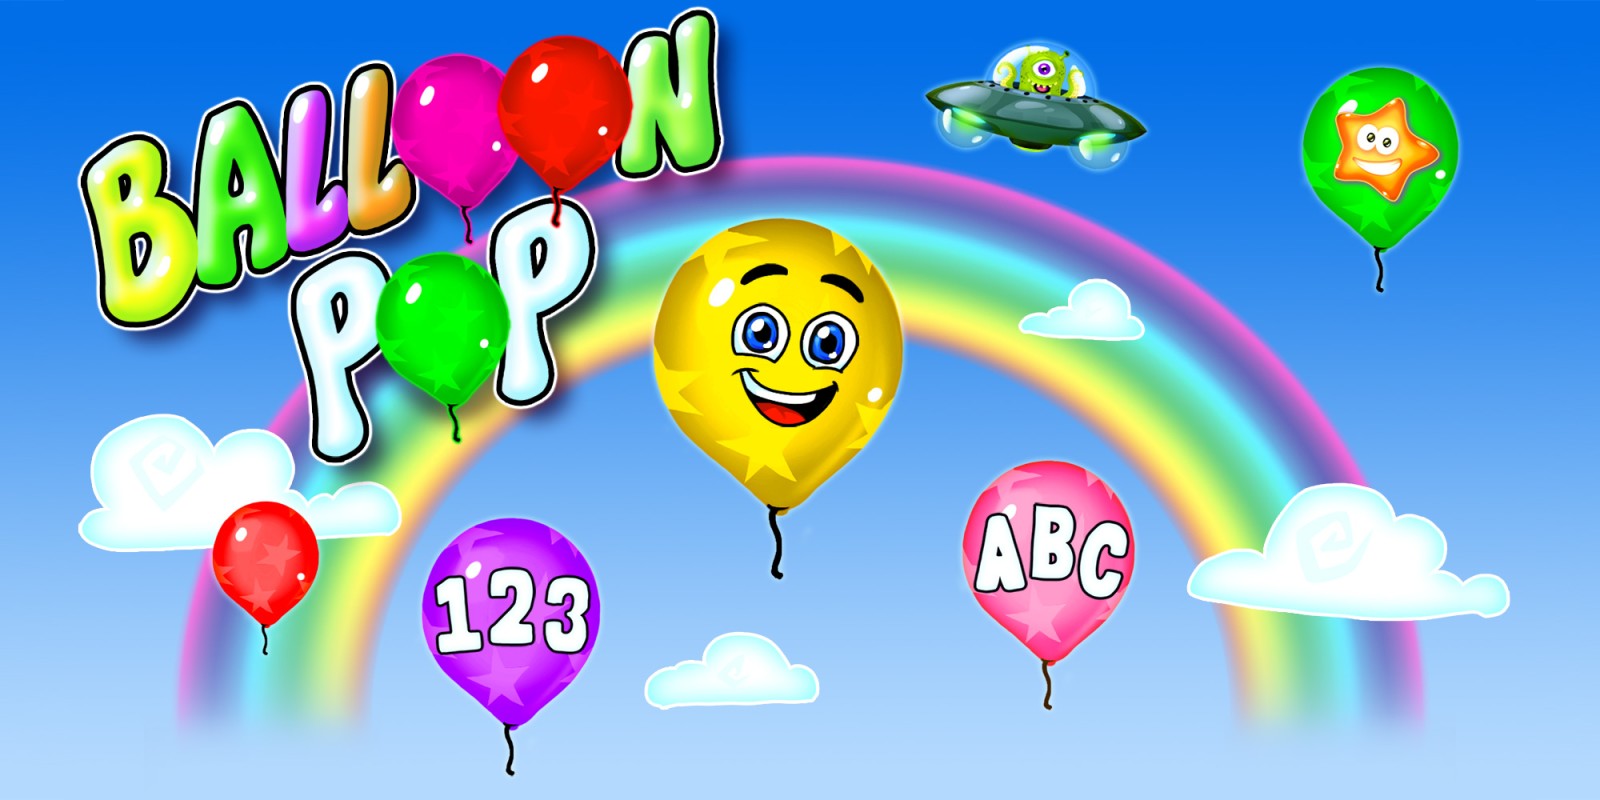 Balloon Pop - juegos de aprendizaje para niños en edad preescolar y niños pequeños: números, letras, formas, colores 14 idiomas